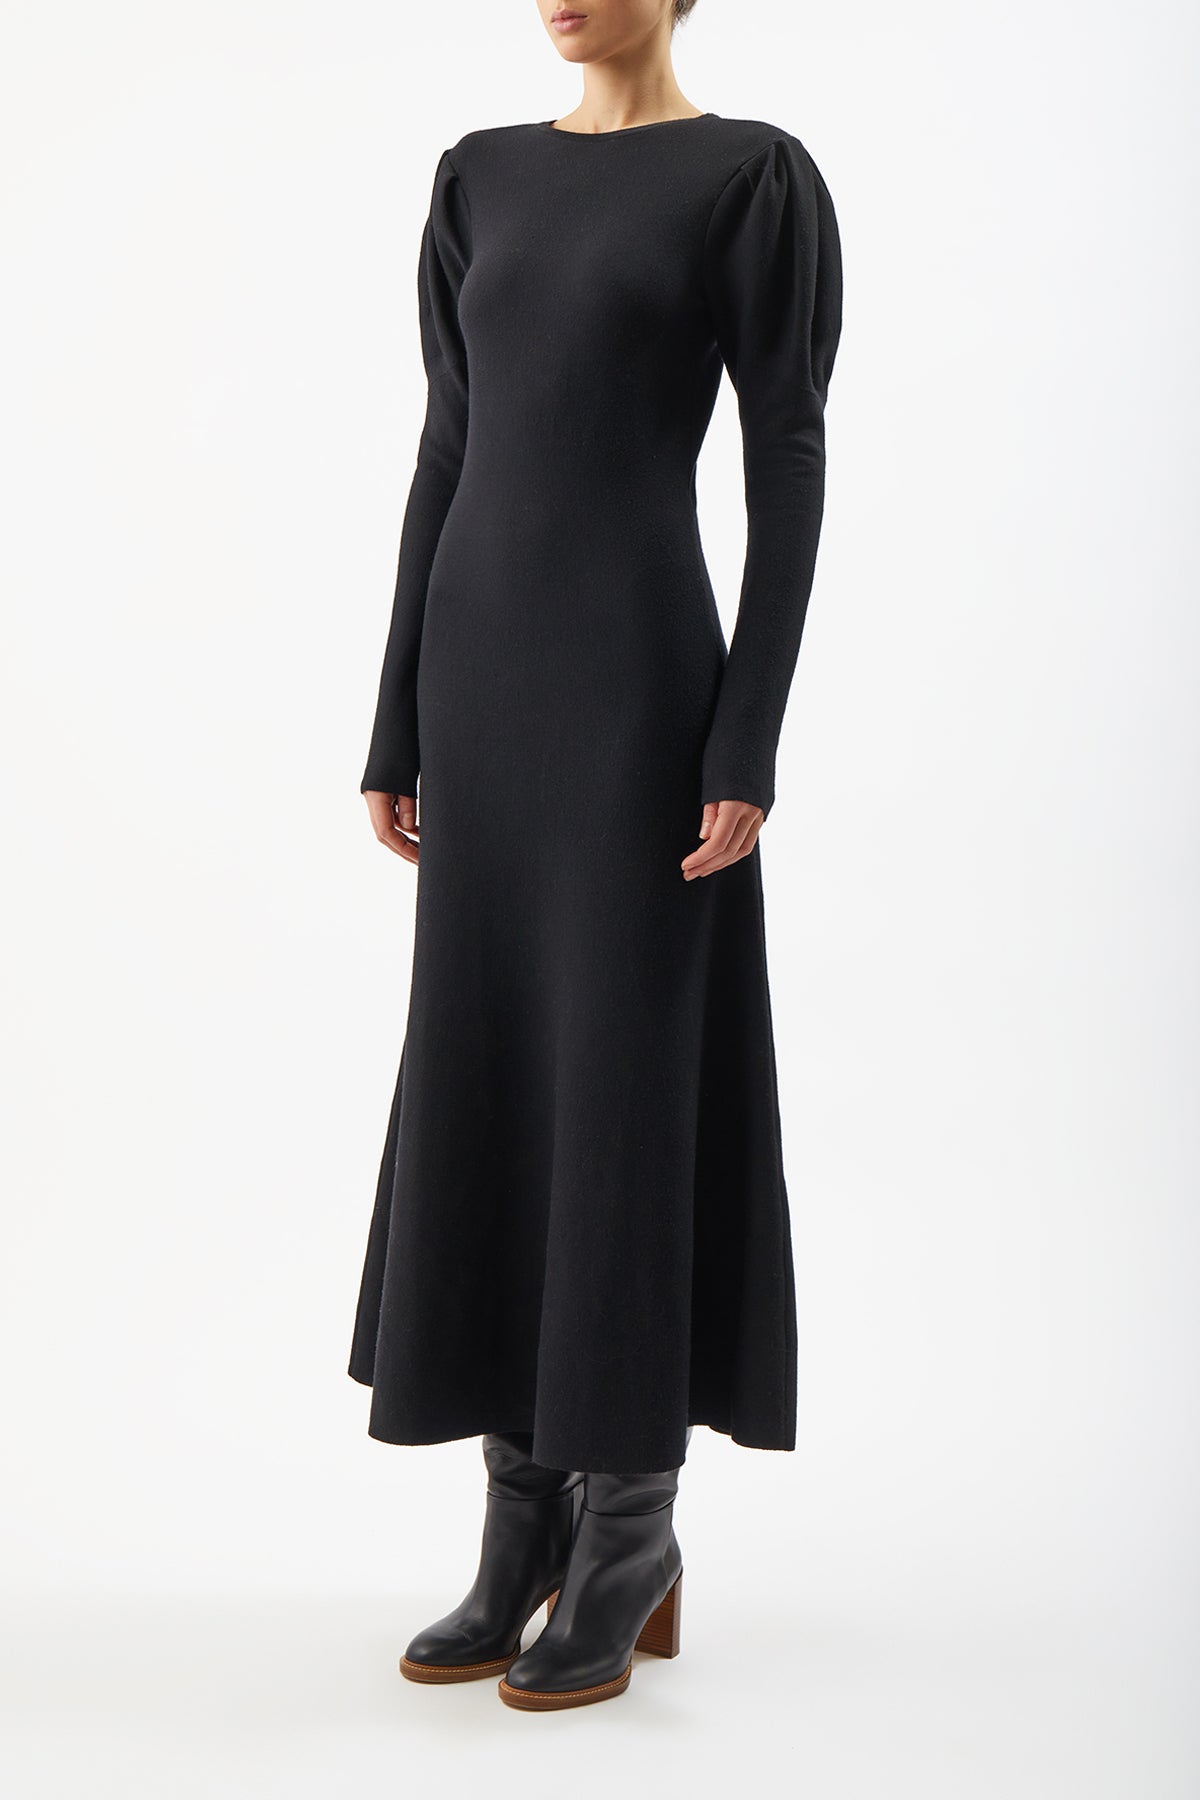 Hannah Knit Dress in Black Merino Wool